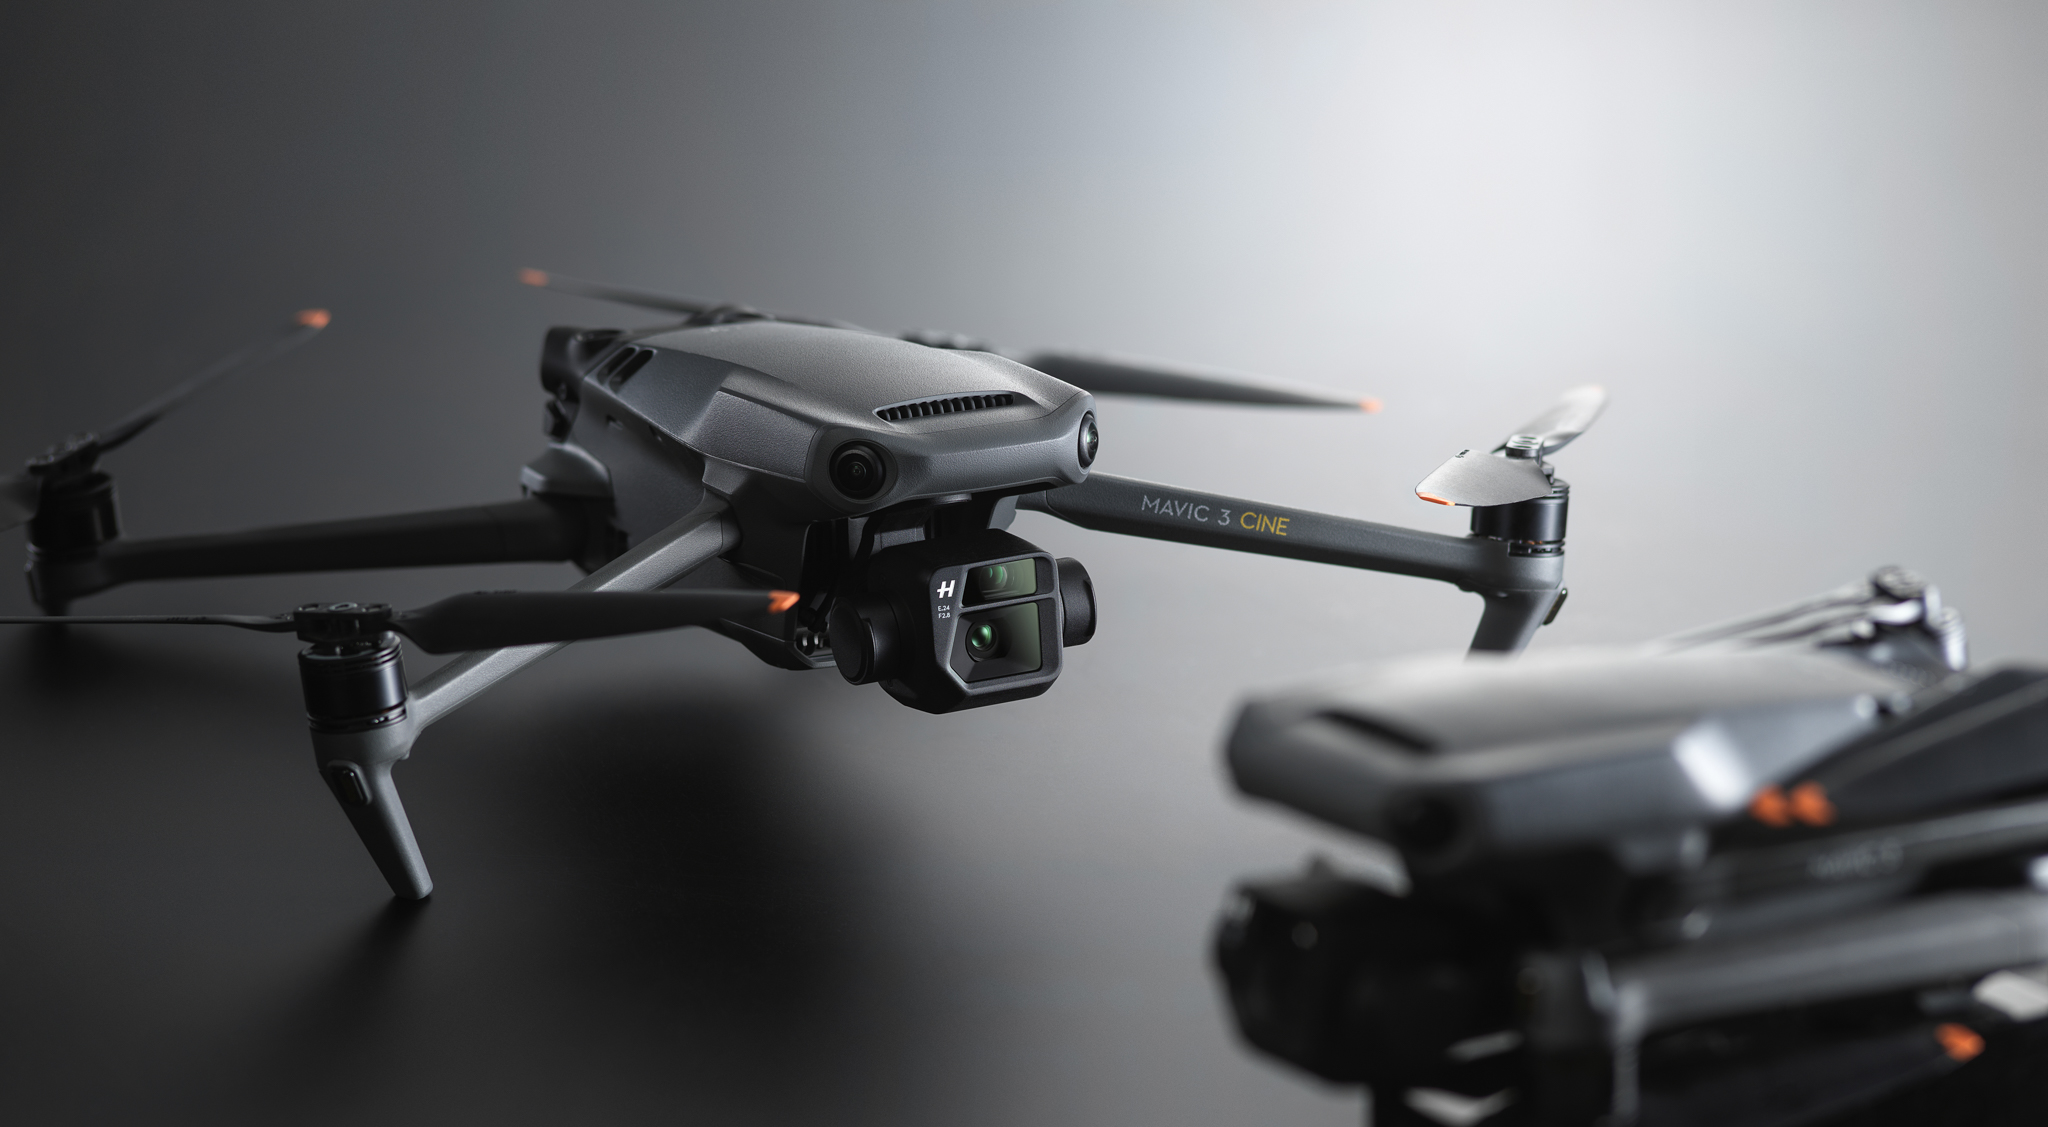 DJI သည် Mavic 3 အသစ်ဖြင့် ကမ္ဘာ့အကောင်းဆုံး Drone ကို ပိုမိုကောင်းမွန်အောင် ပြုလုပ်ခဲ့သည်။